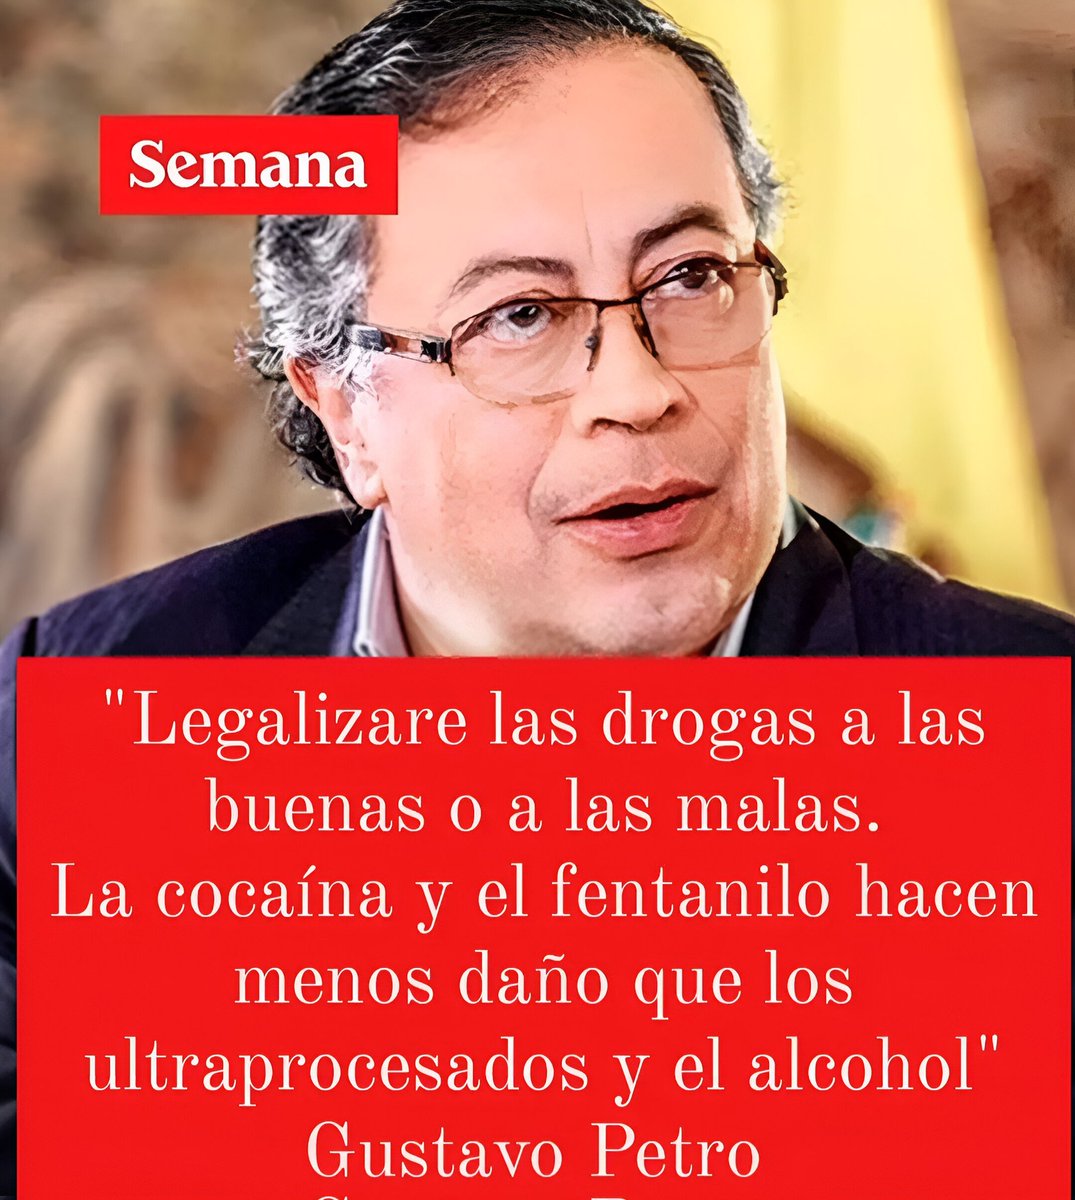 🚨ÚLTIMA HORA🚨
Petro es un DROGADICTO NARCOTRAFICANTE Y BORRACHO y LEGALIZÓ consumir, vender y comprar drogas.
PETRO ES UN NARCO!
FUERA PETRO!
RETWEET 🔁 SI CREES QUE PETRO ES NARCOTRAFICANTE Y DROGADICTO 
#CannabisDeUsoAdulto #SenadoDebataCannabis #FueraPetro #EsUnAlivio #Novoa